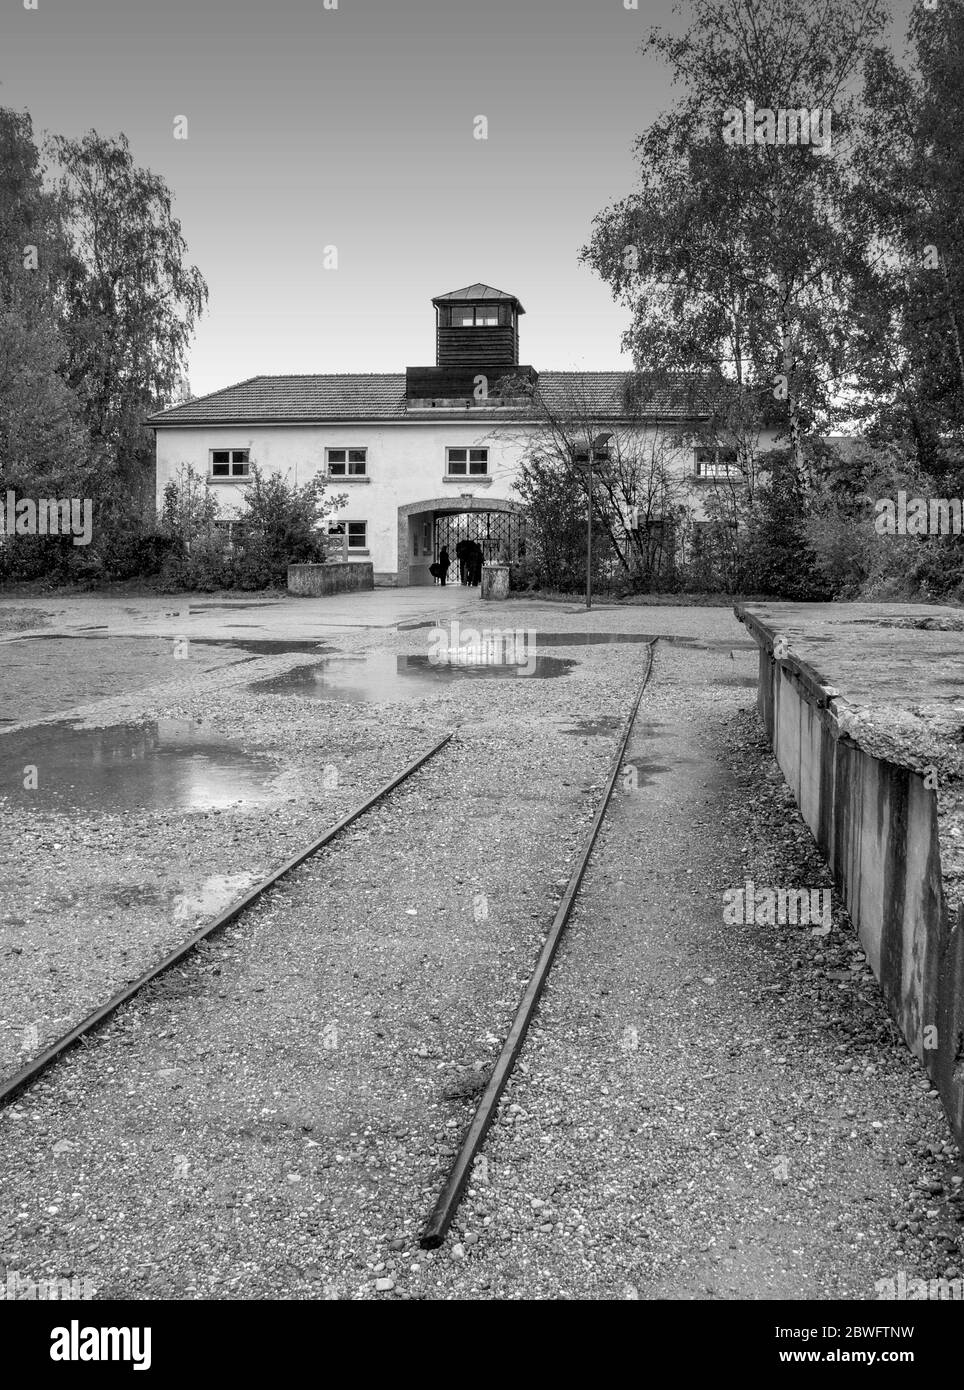 Bâtiment d'entrée du camp de concentration de Dachau. Ouvert en 1933, il fut le premier camp de concentration nazi et fut un prototype pour tous les autres Conce nazi Banque D'Images